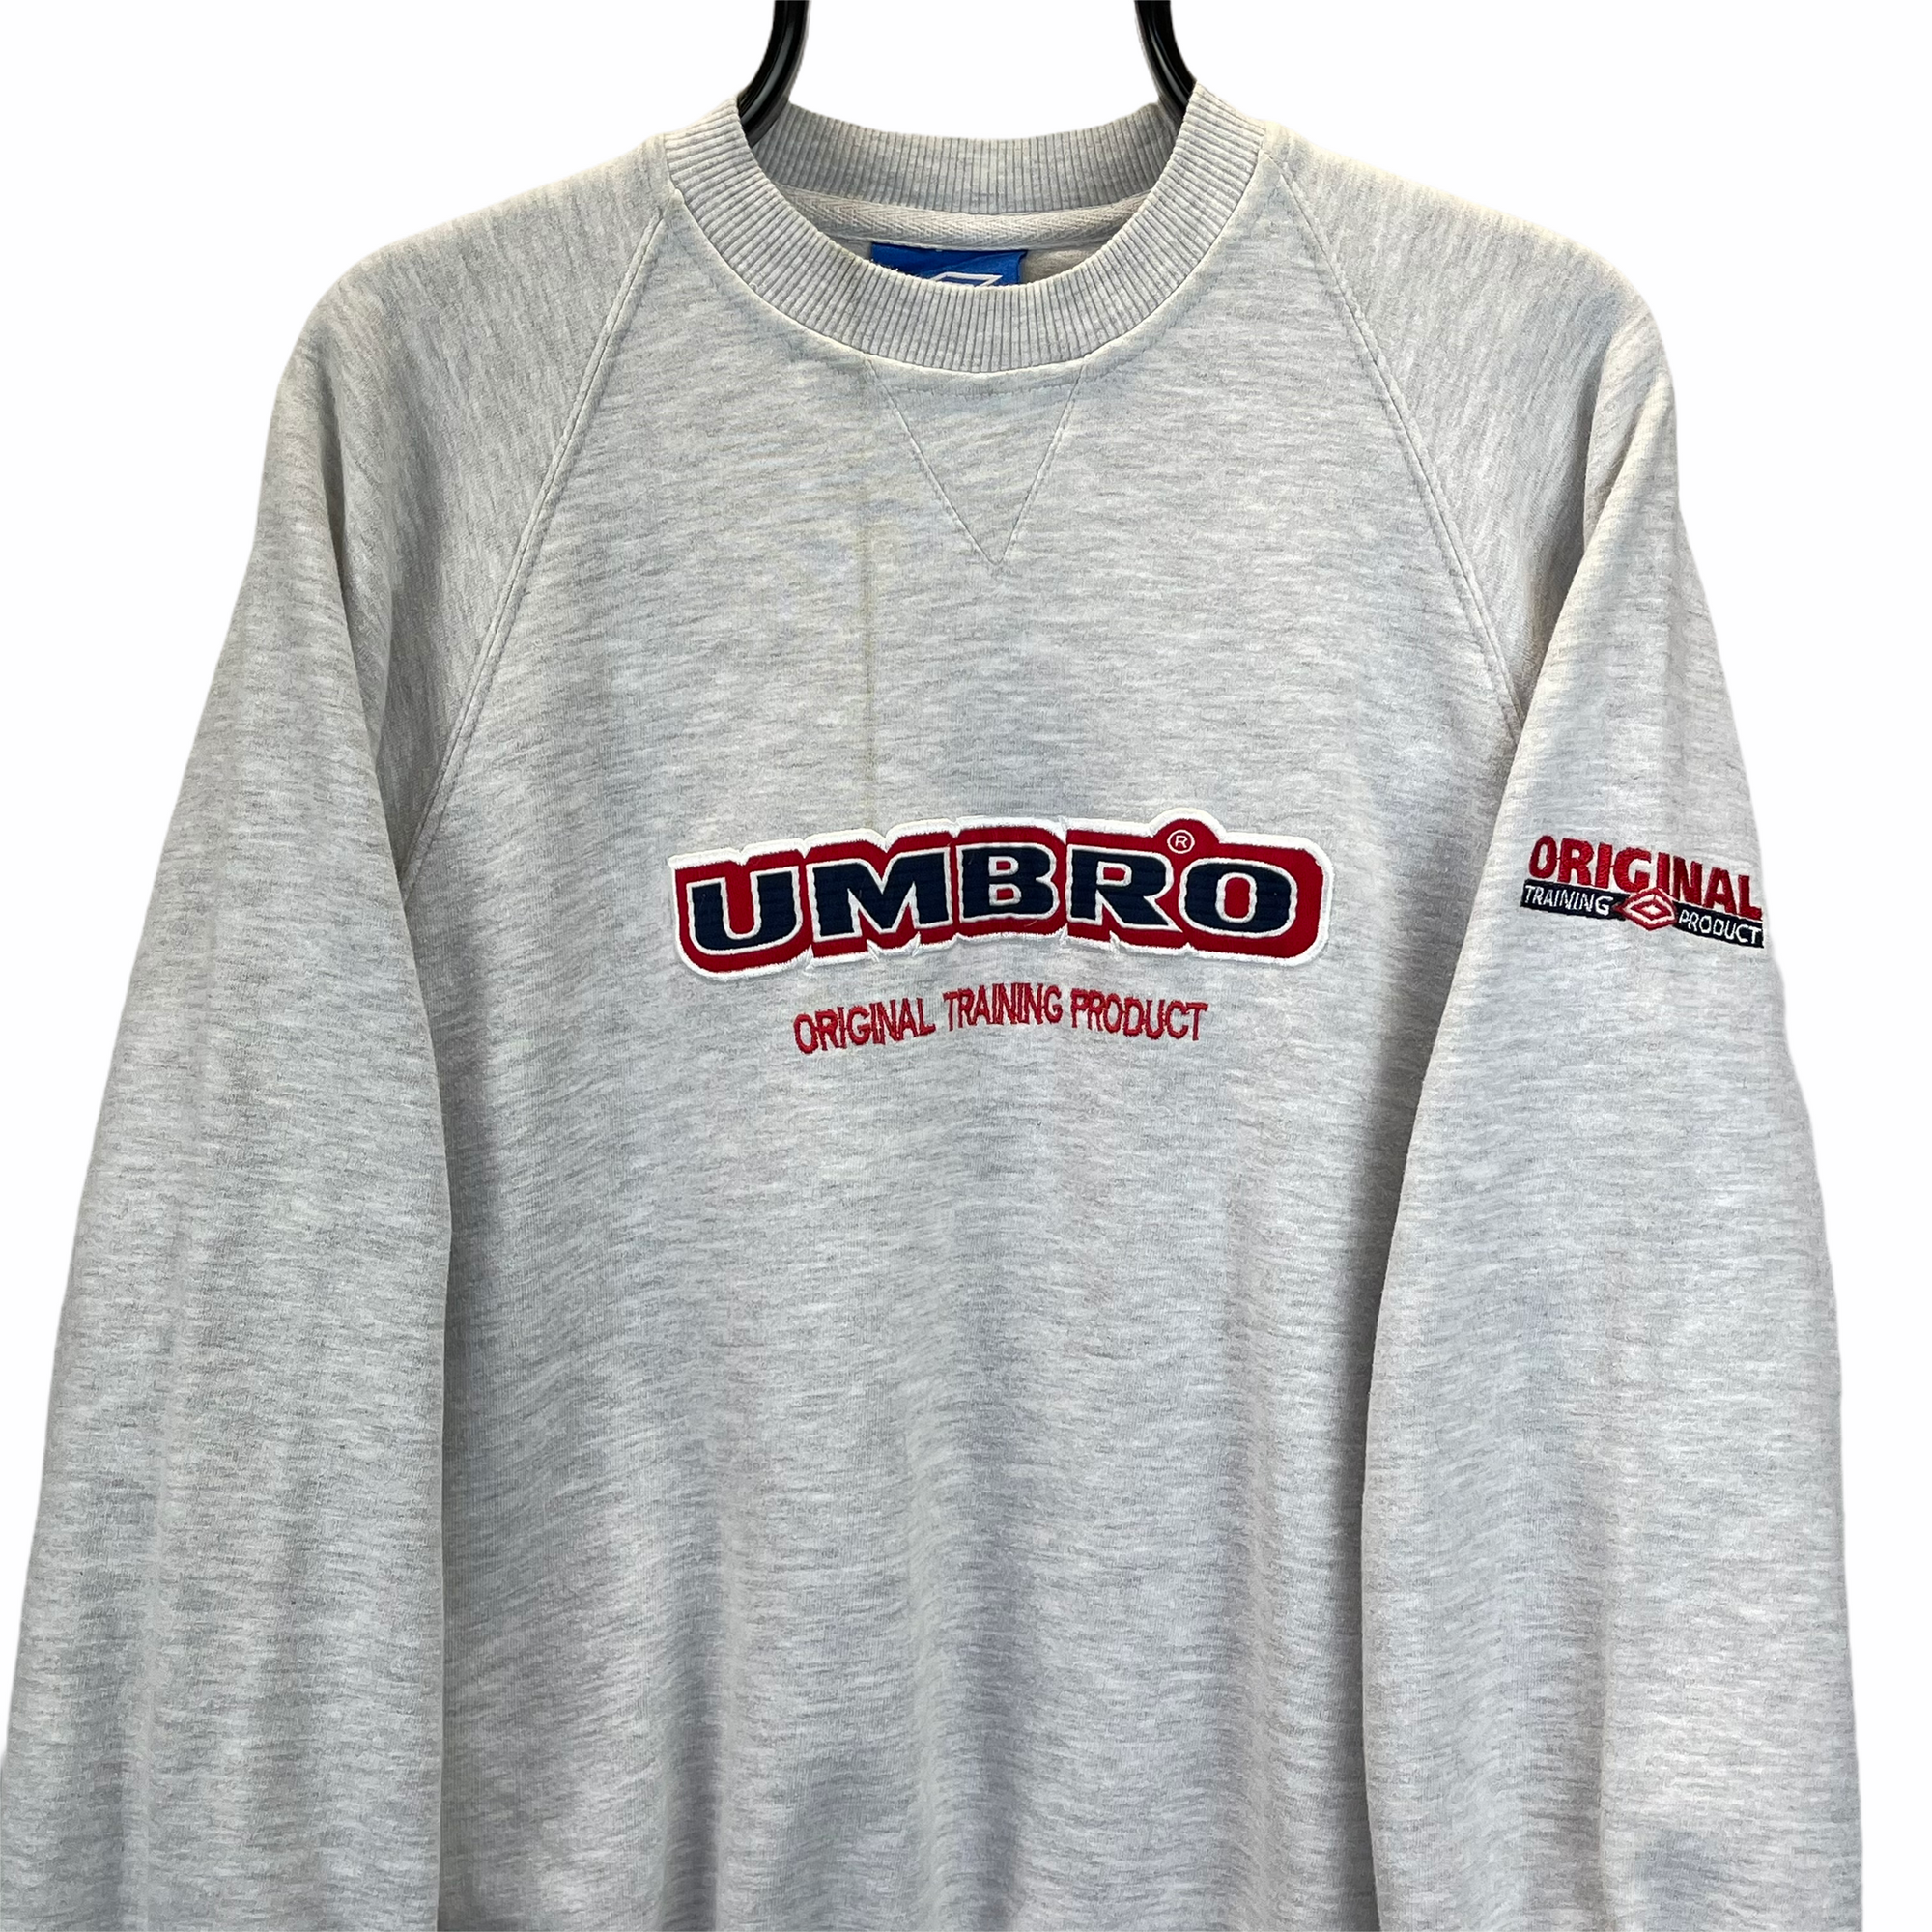 Vintage 90s Umbro Spellout Sweatshirt in Grey, Red & Navy - Men's Large/Women's XL